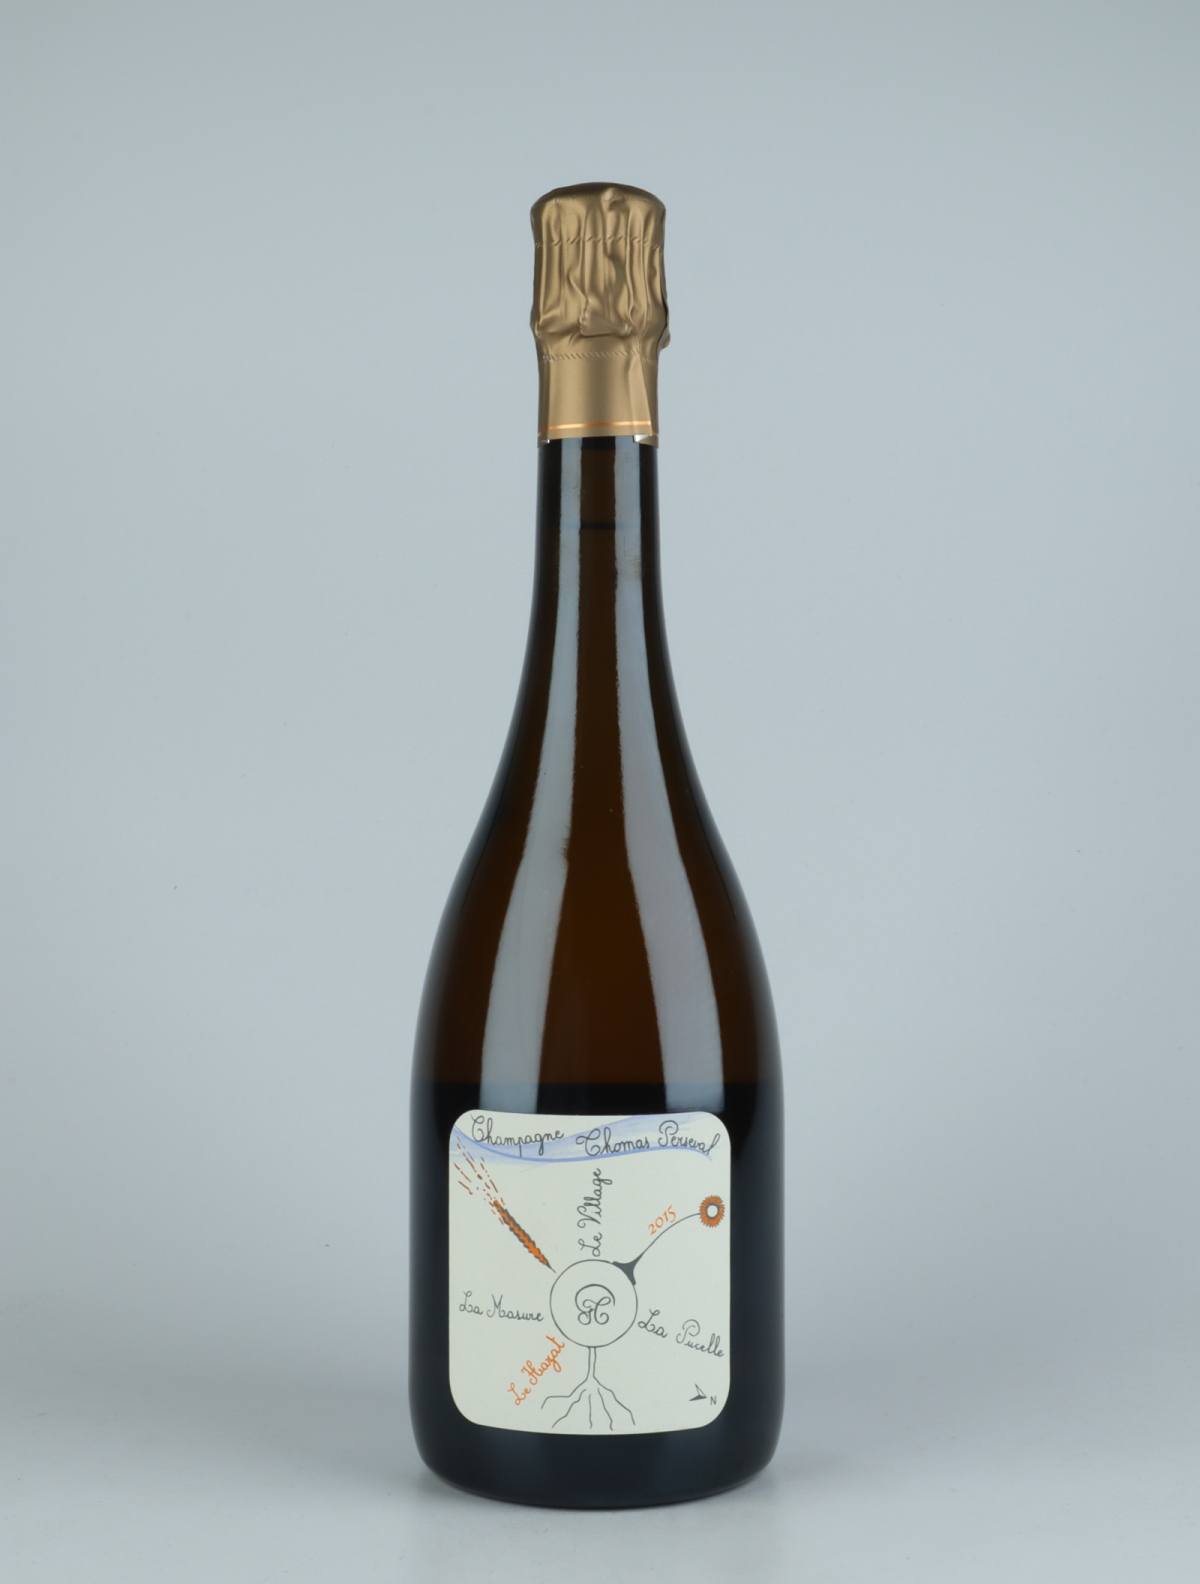 En flaske 2015 Chamery 1. Cru - Le Hazat Mousserende fra Thomas Perseval, Champagne i Frankrig